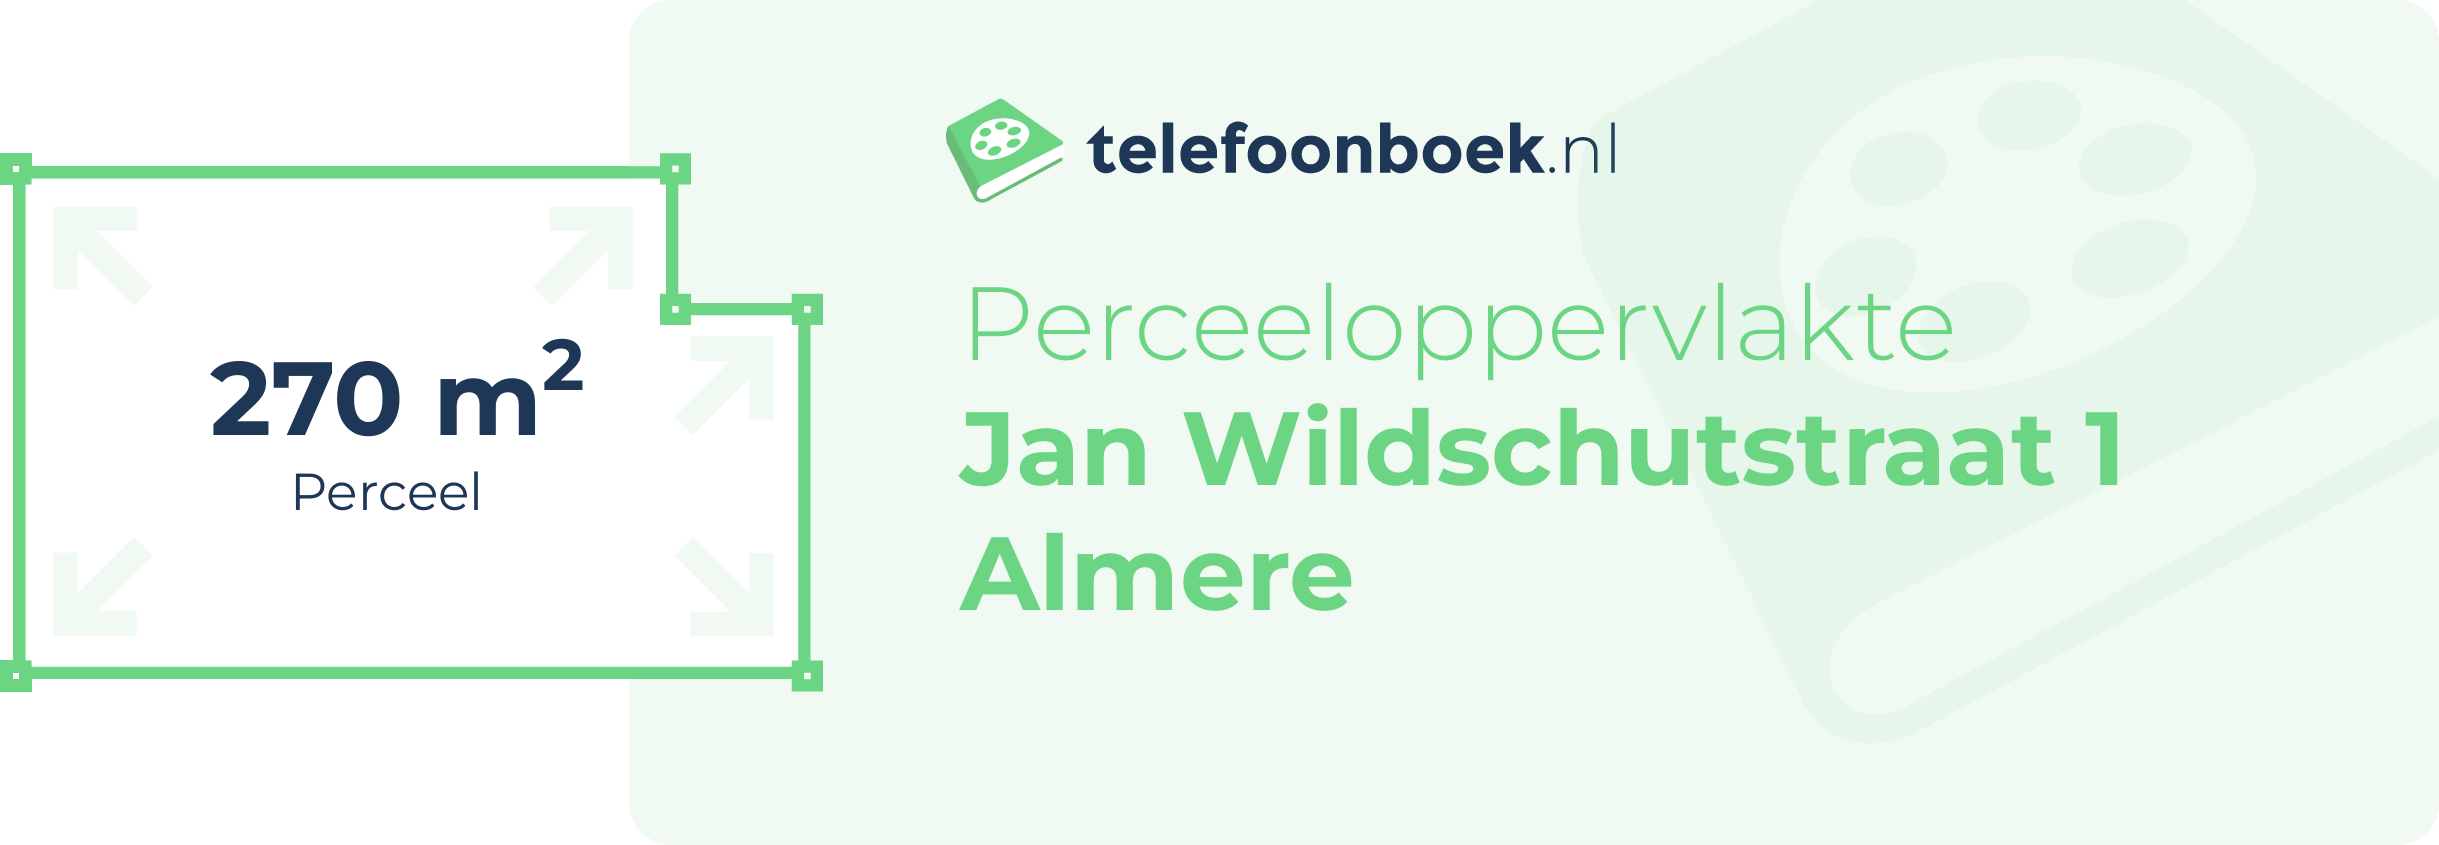 Perceeloppervlakte Jan Wildschutstraat 1 Almere